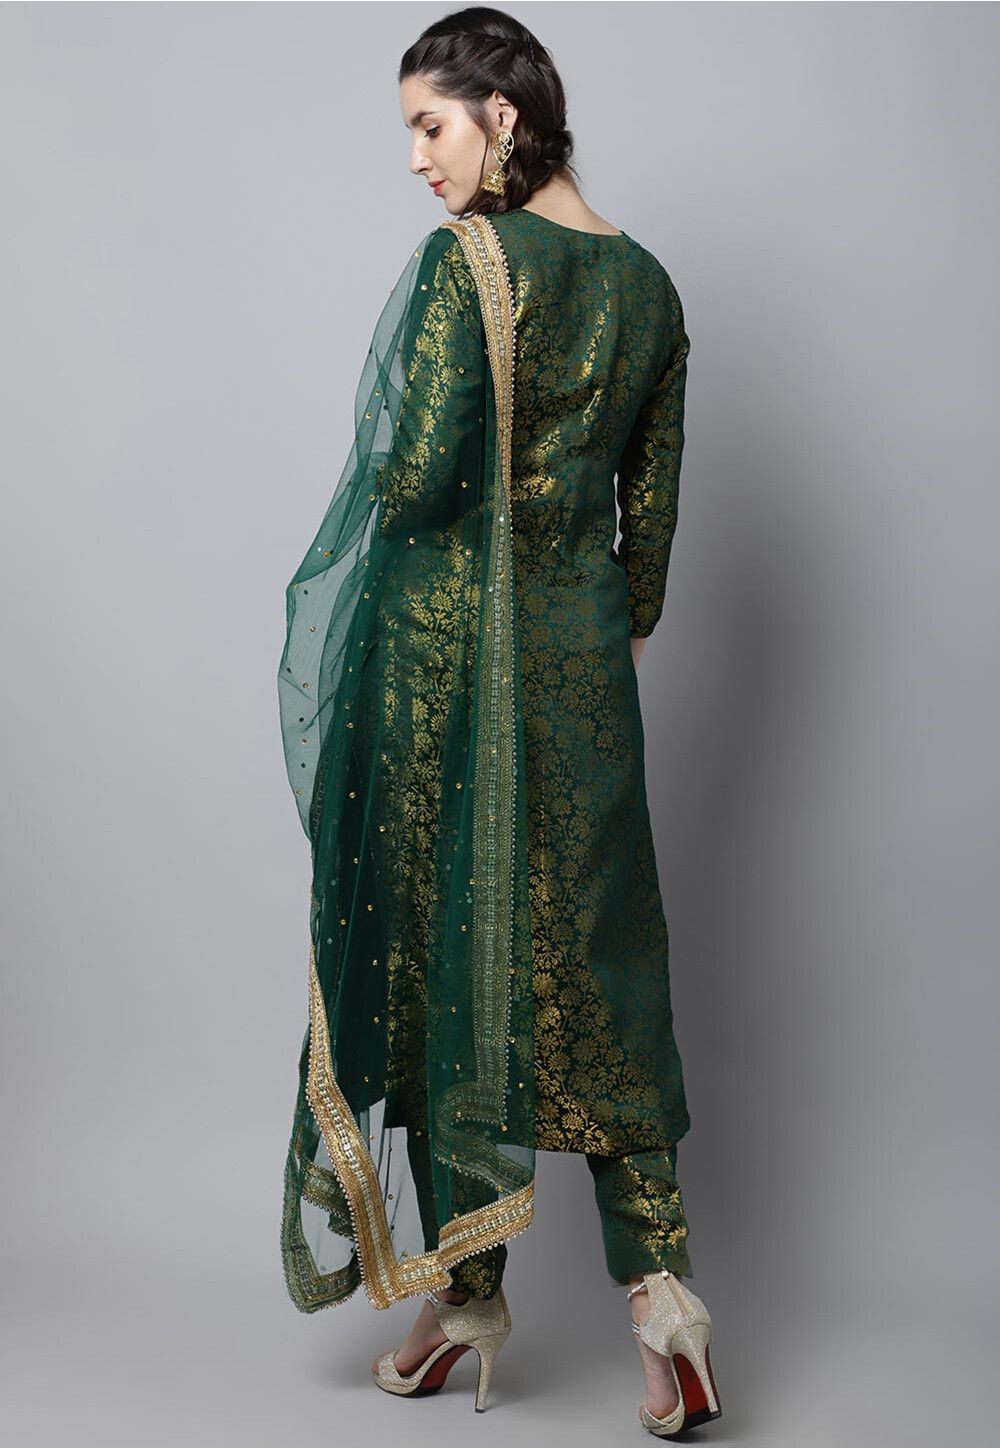 Brocade Pakistani Suit in Dark Green : KNV382